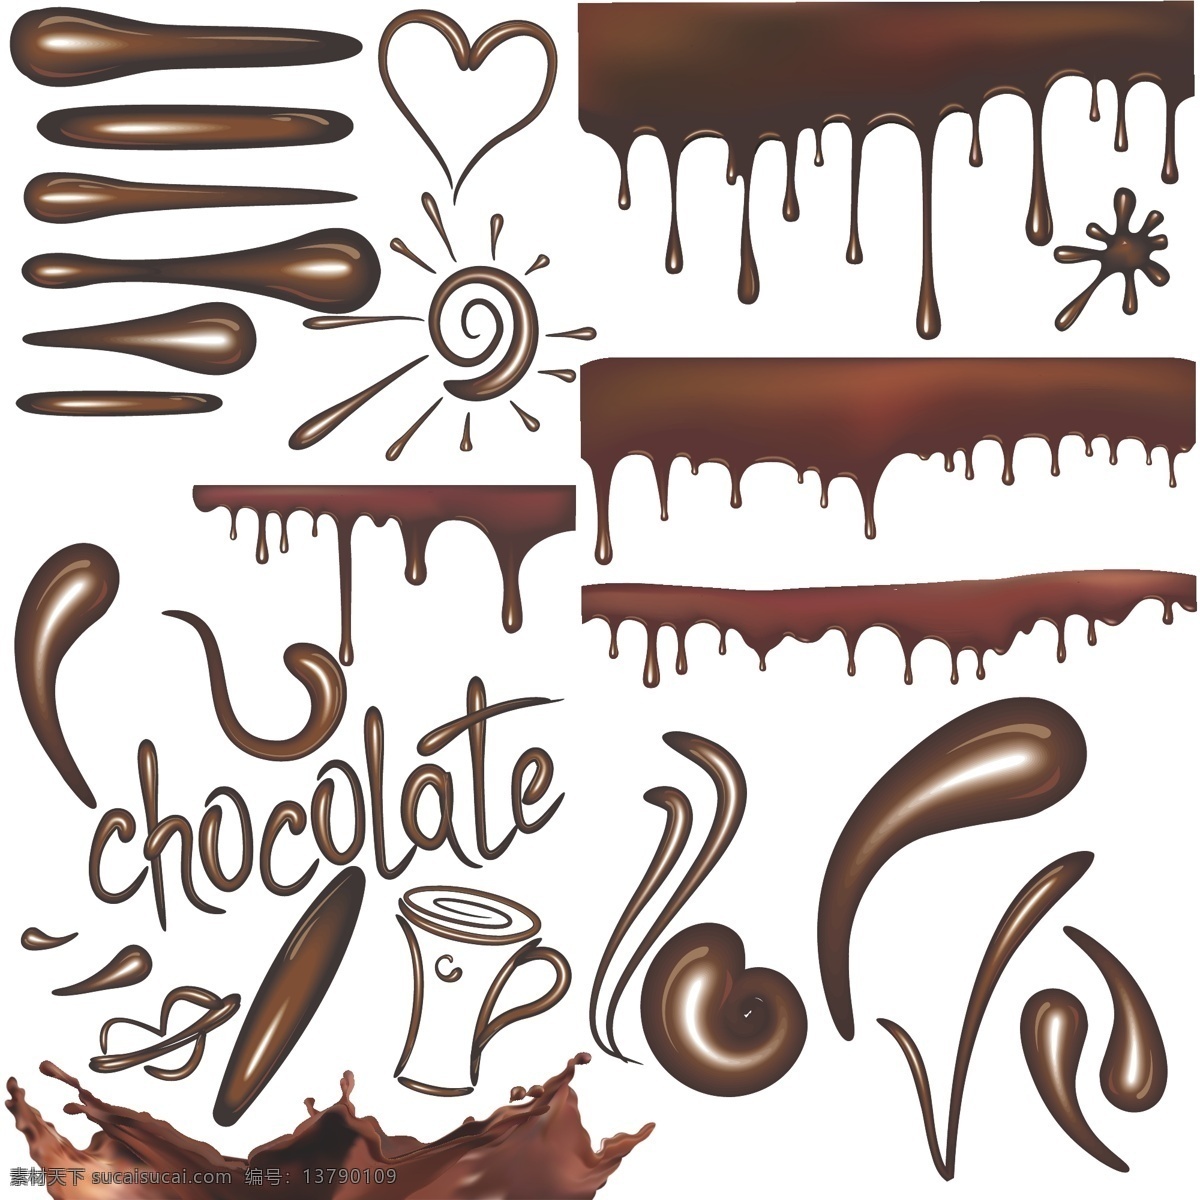 情人节 巧克力 飞溅巧克力 诱人的巧克力 美食 食品 动感巧克力 巧克力酱 情人节美食 咖啡 节日素材 矢量